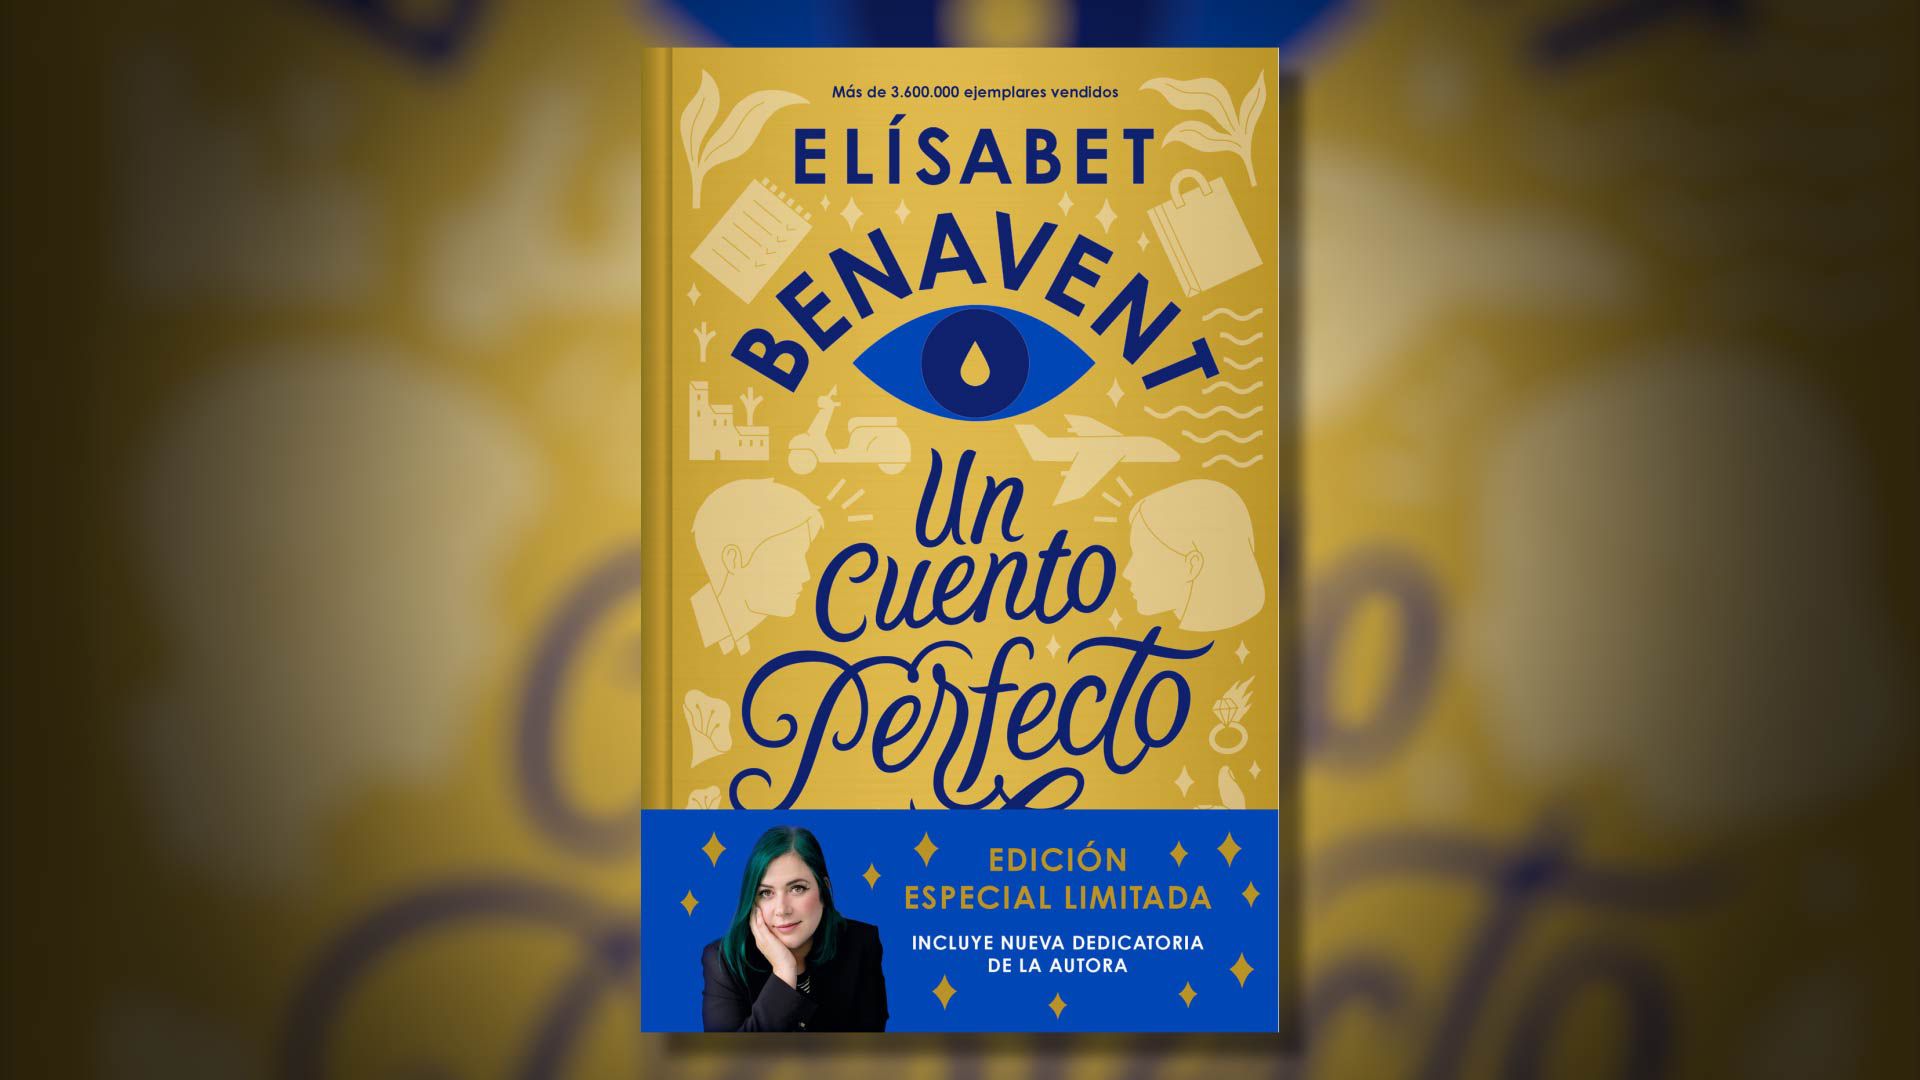 Vendió más de 4 millones de libros y está detrás de las series “Valeria” y “Un  cuento perfecto”: quién es Elísabet Benavent - Infobae